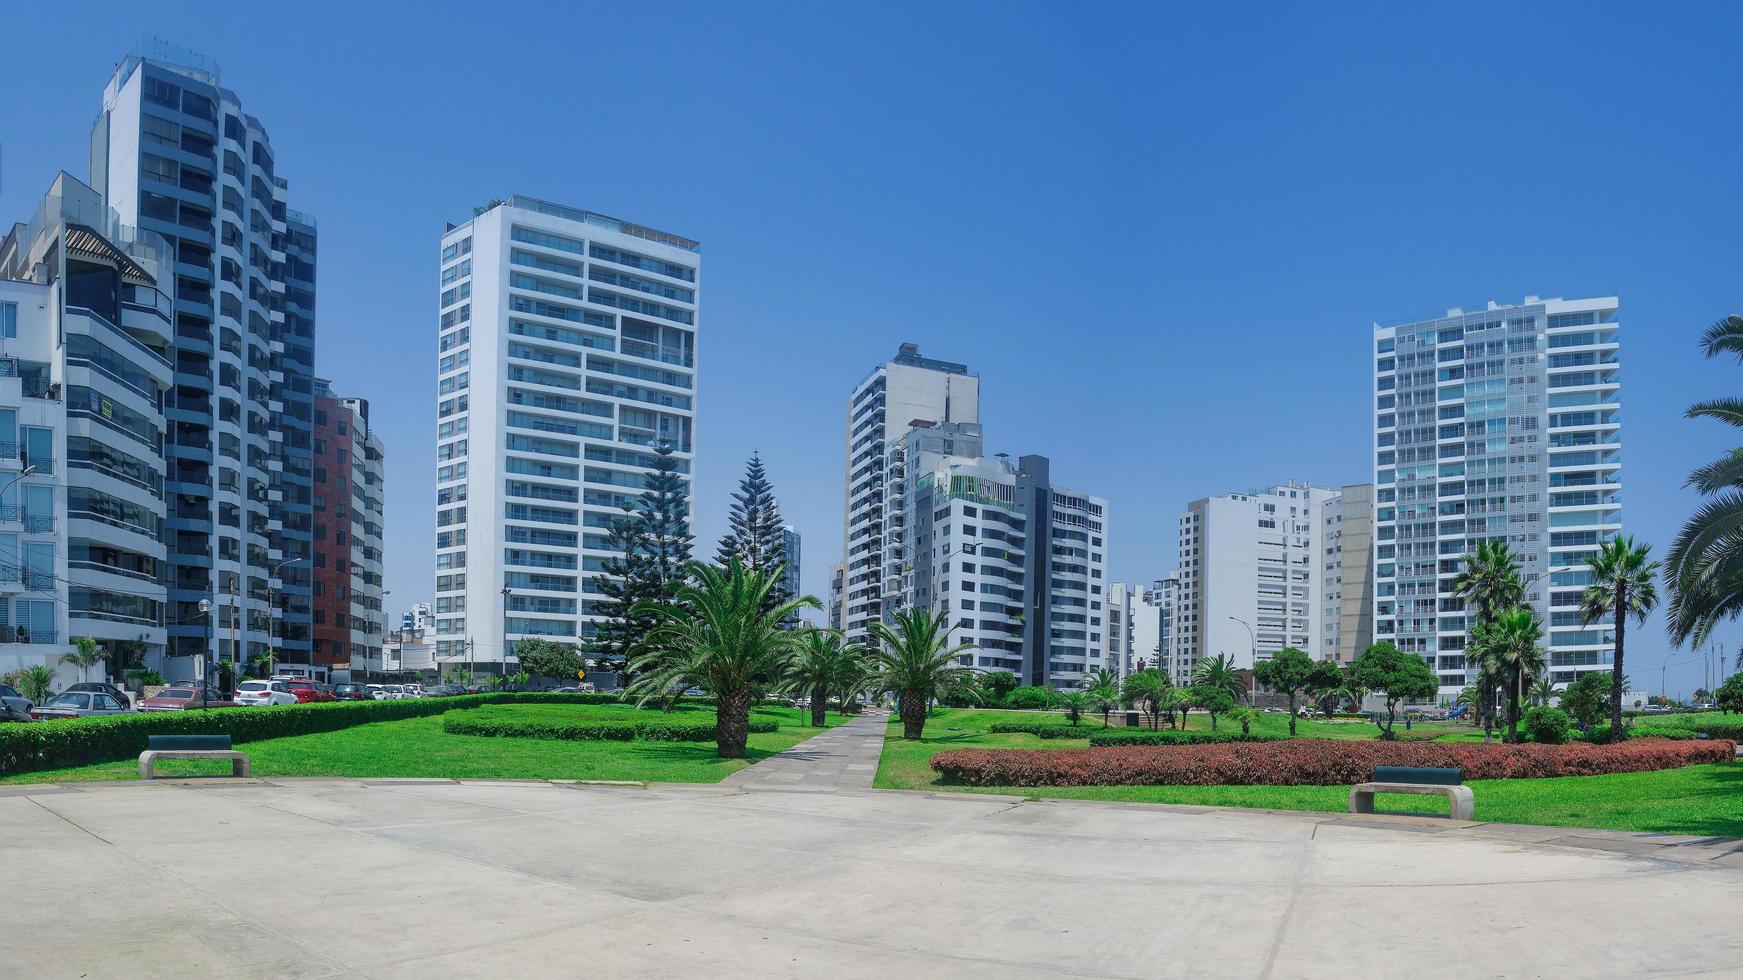 grattacieli nel distretto di miraflores a lima perù foto